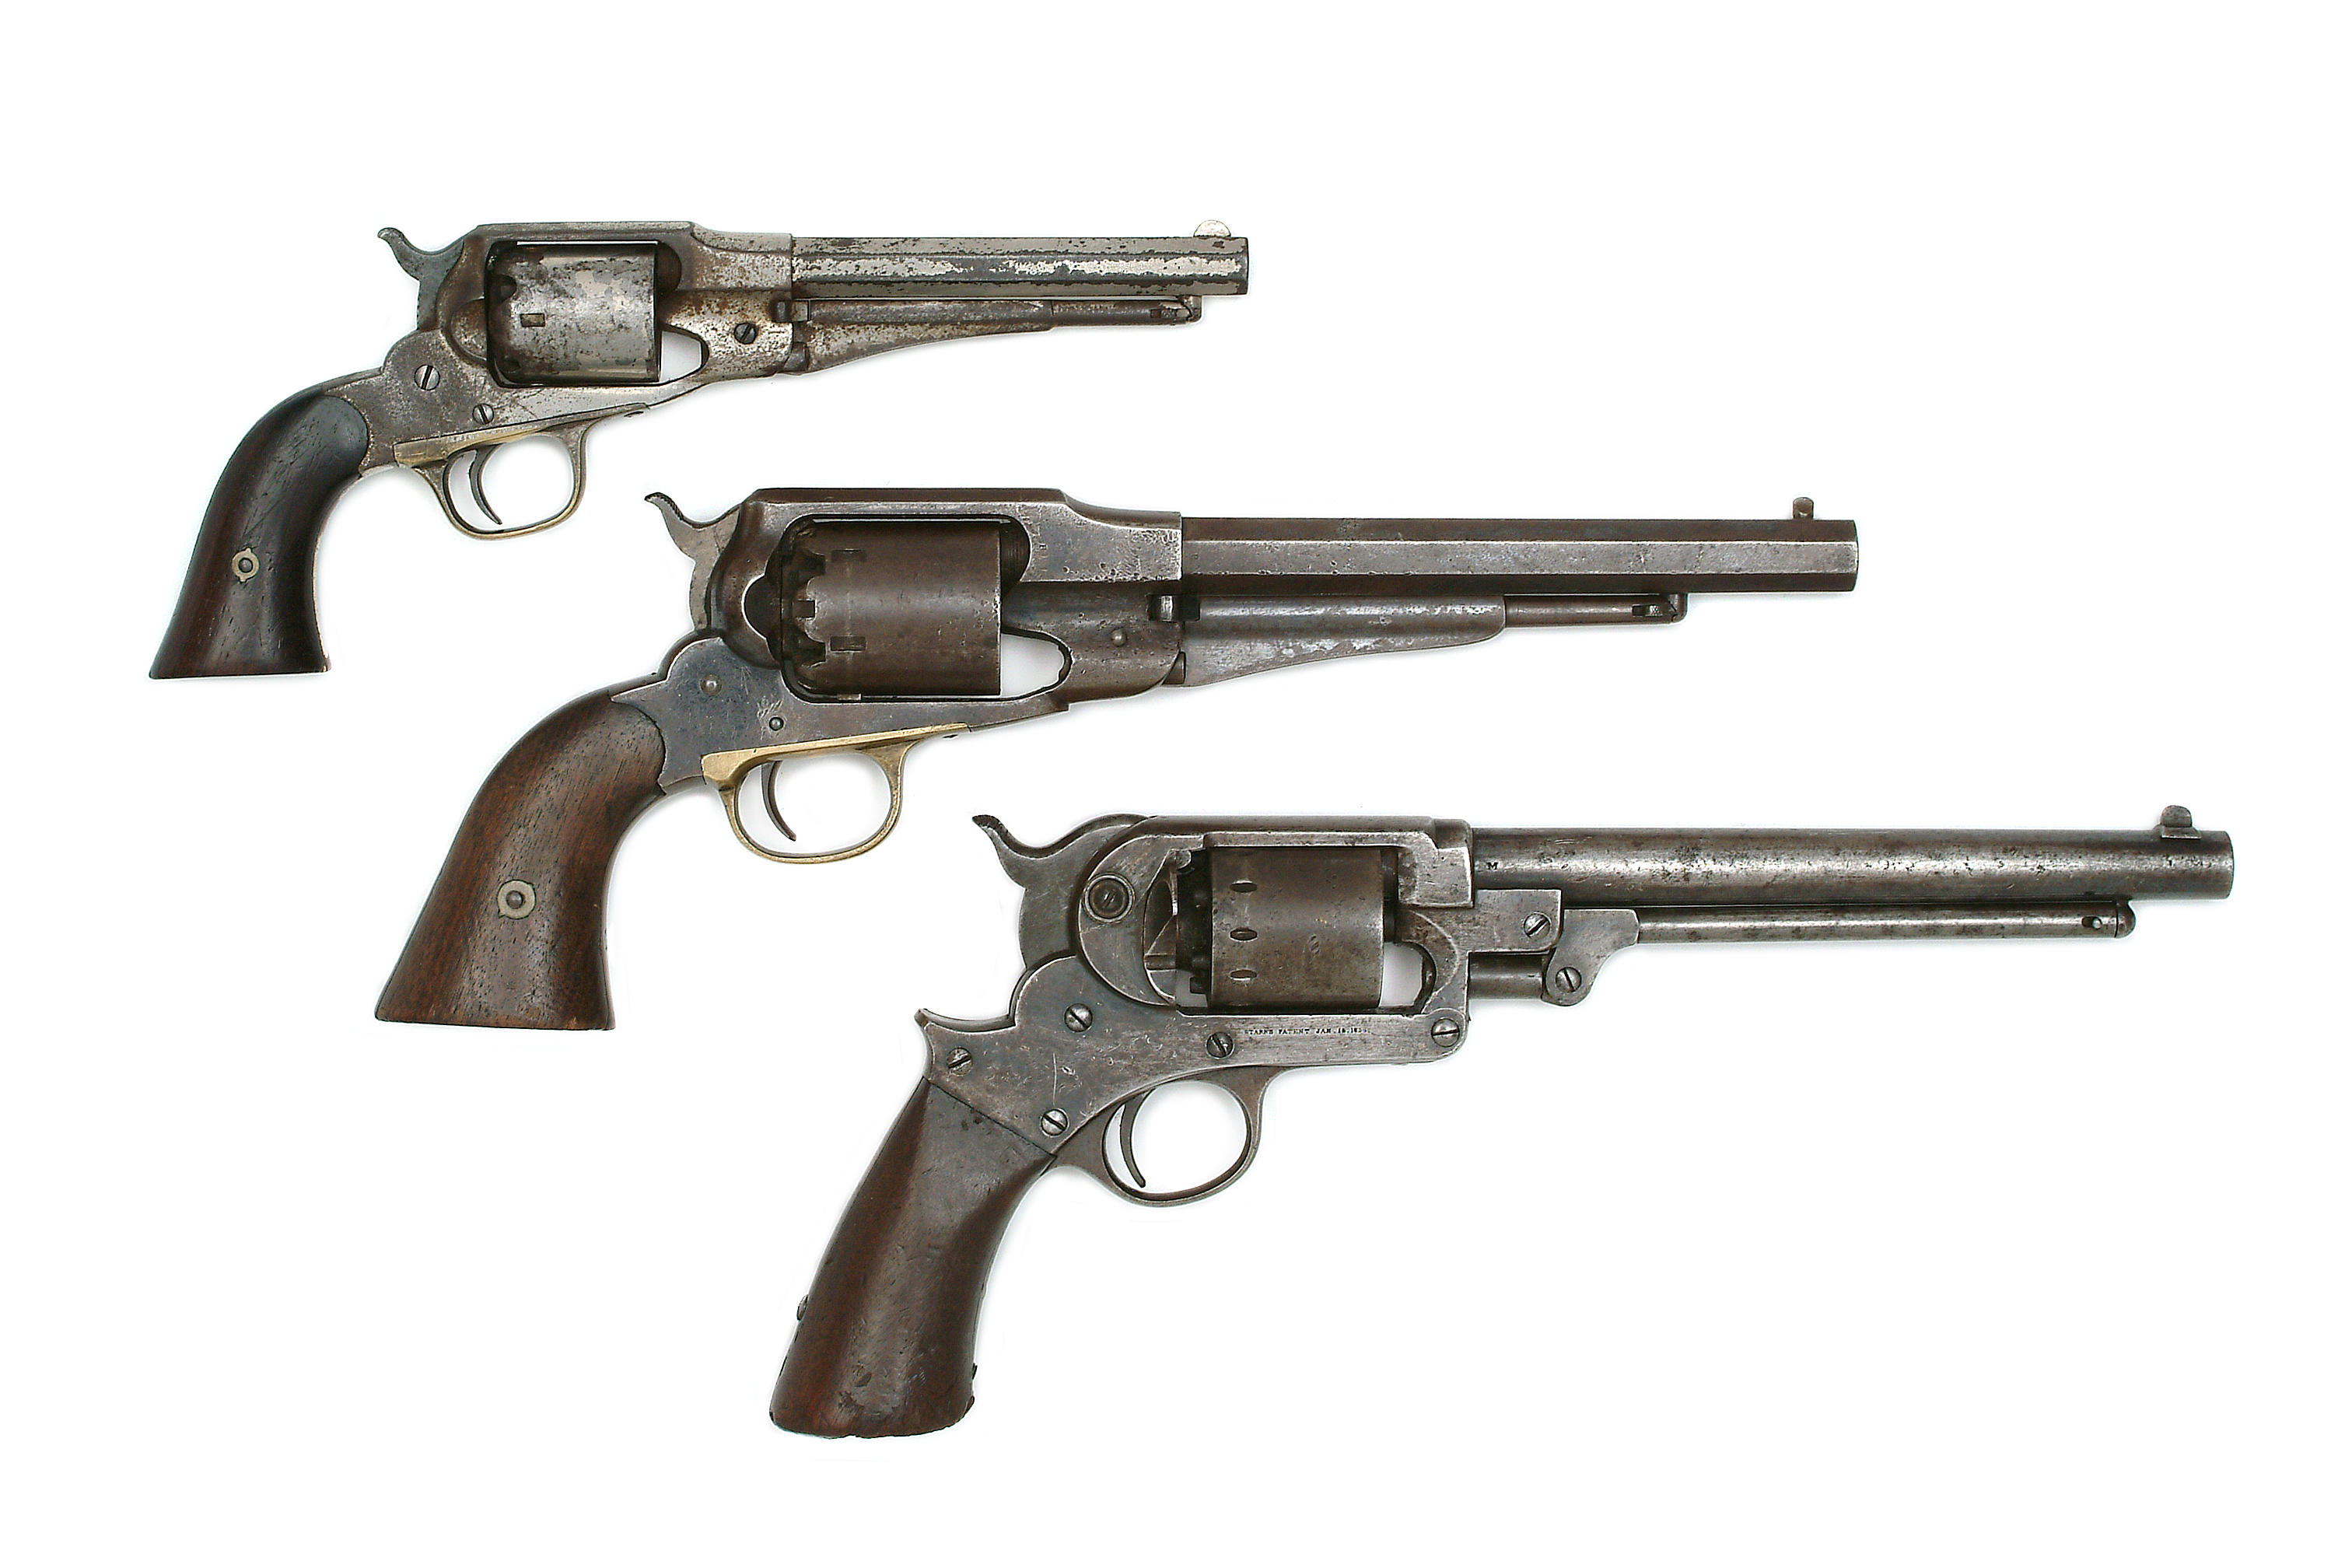 Remington Model Five Trigger